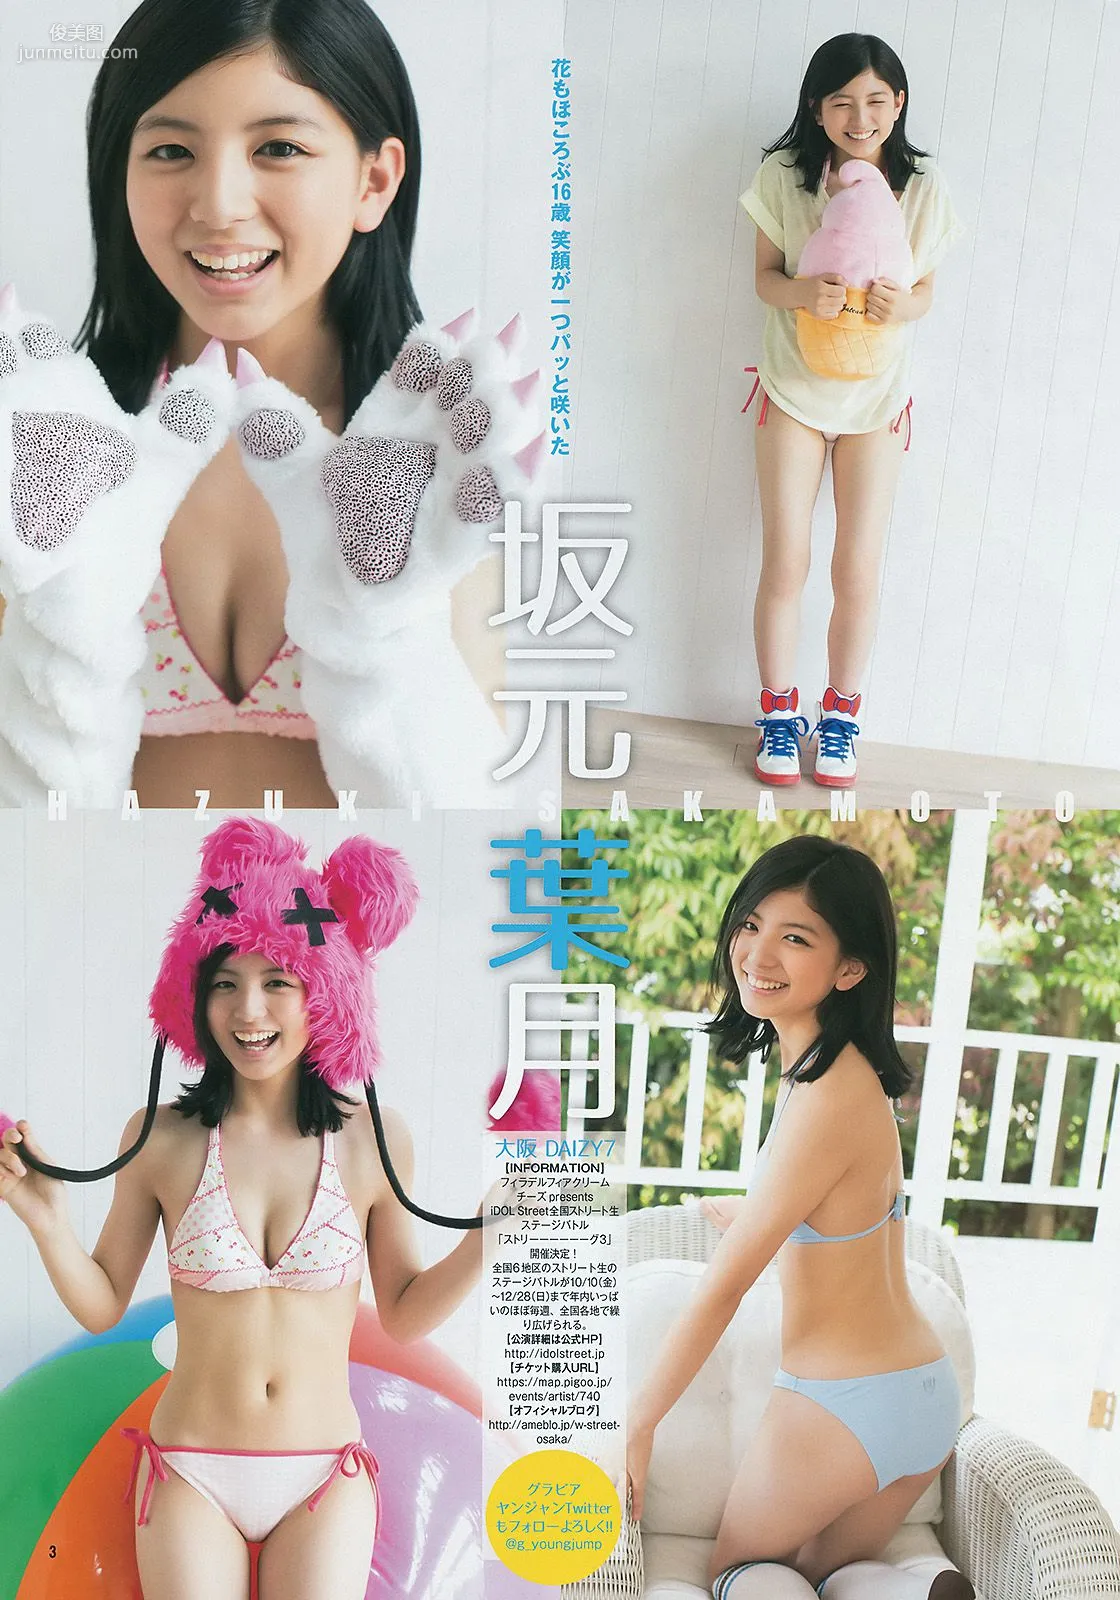 ギャルコン2014 制コレ アルティメット2014 大阪DAIZY7 [Weekly Young Jump] 2014年No.42 写真杂志16